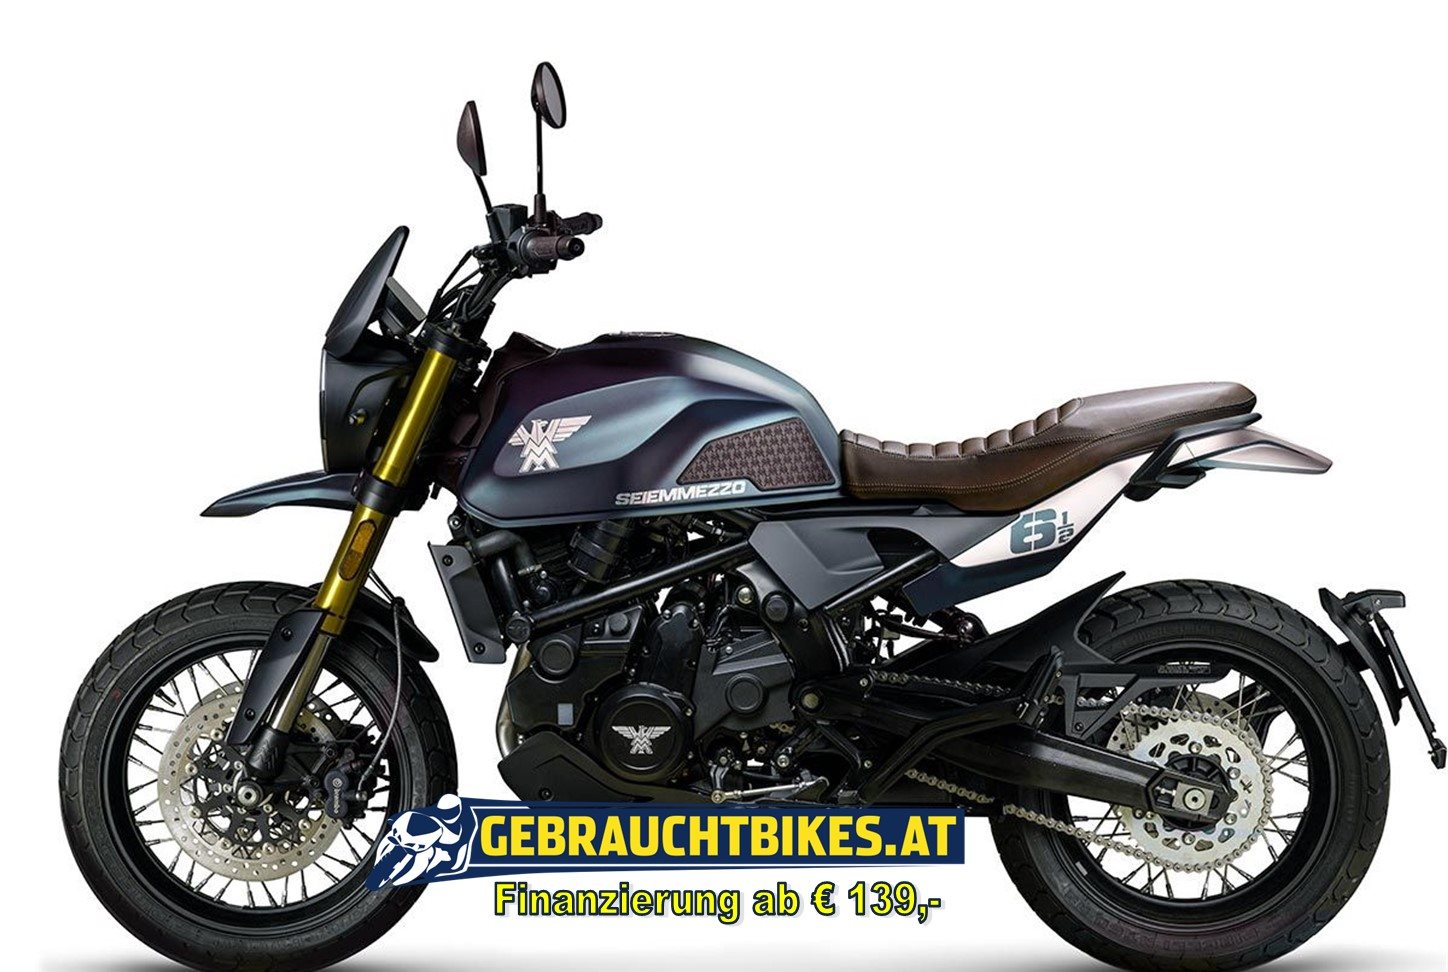 Moto Morini 6 1/2 Seiemmezzo SCR Motorrad, neu